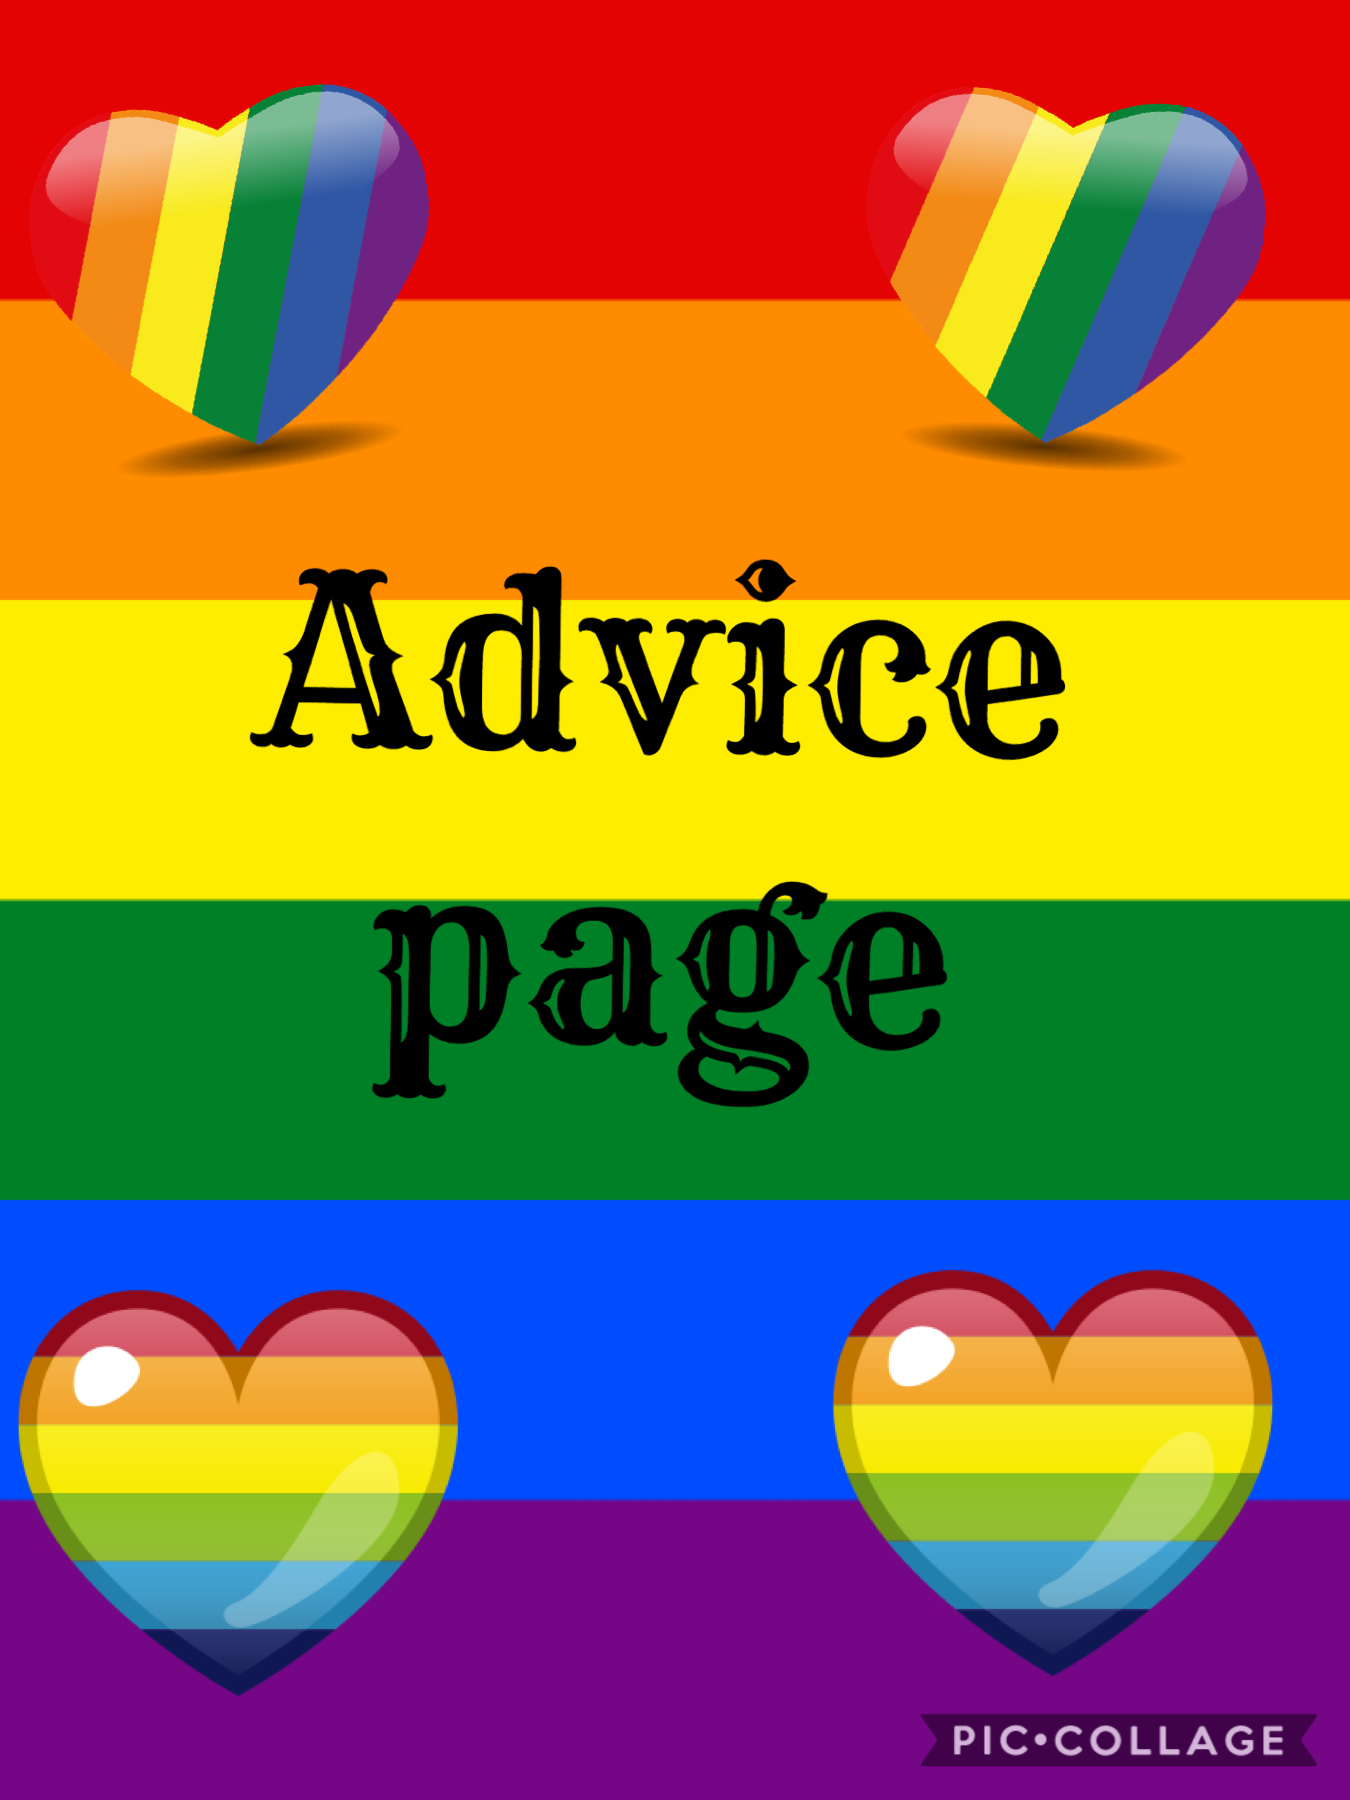 I renewed the advice page bc I need some advice